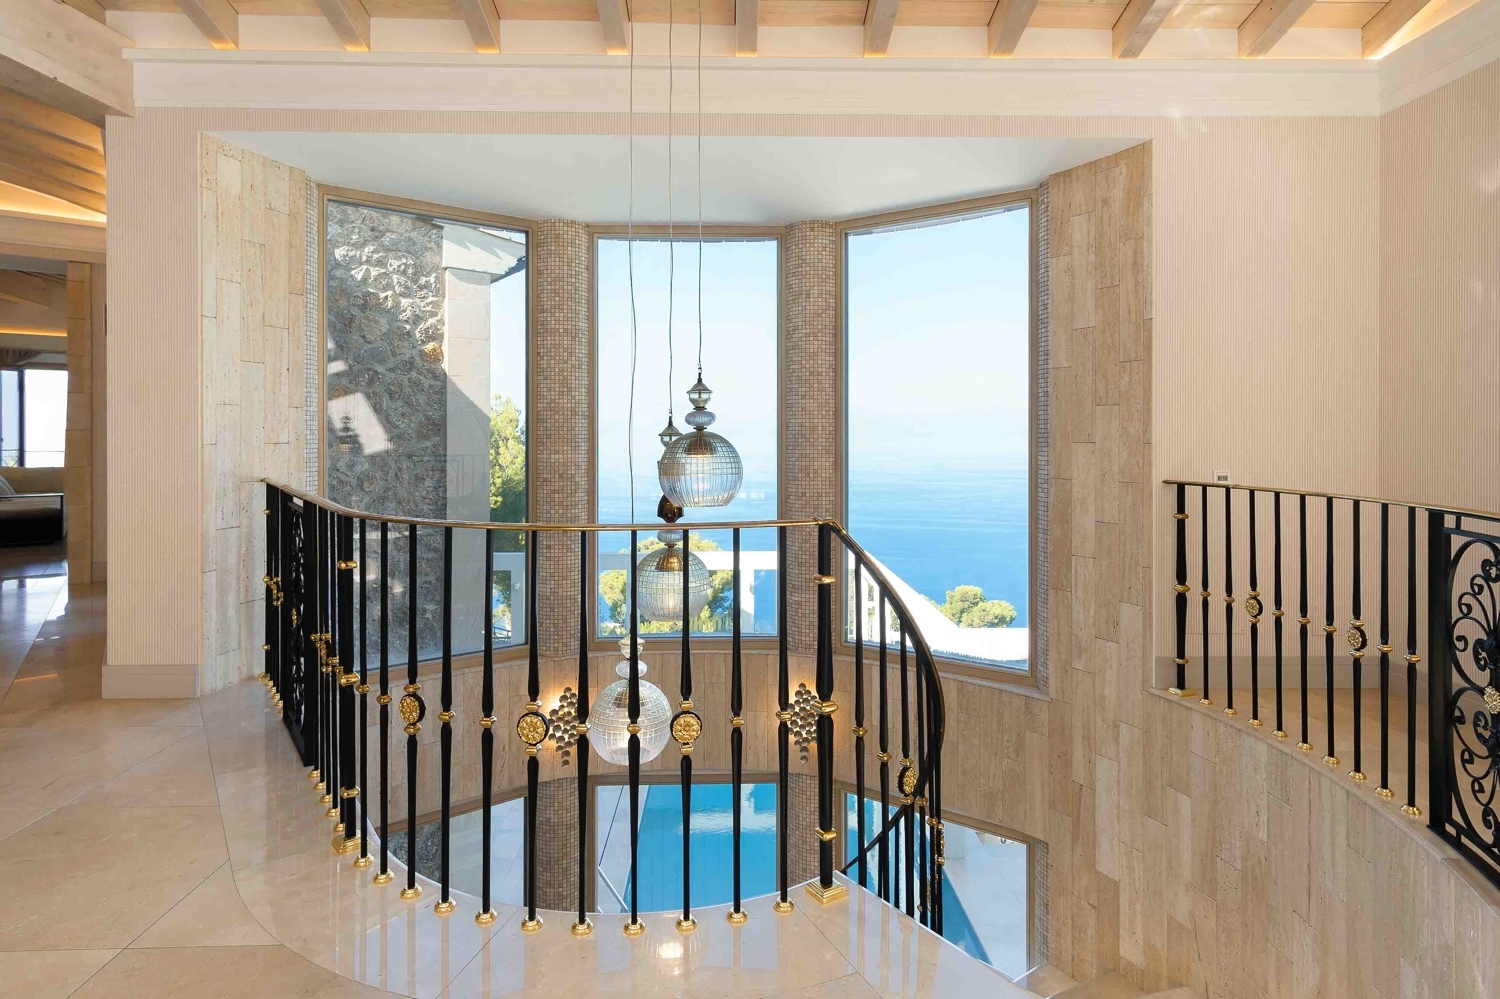 Luxurious villa with breathtaking views in a privileged urbanisation in Valldemossa